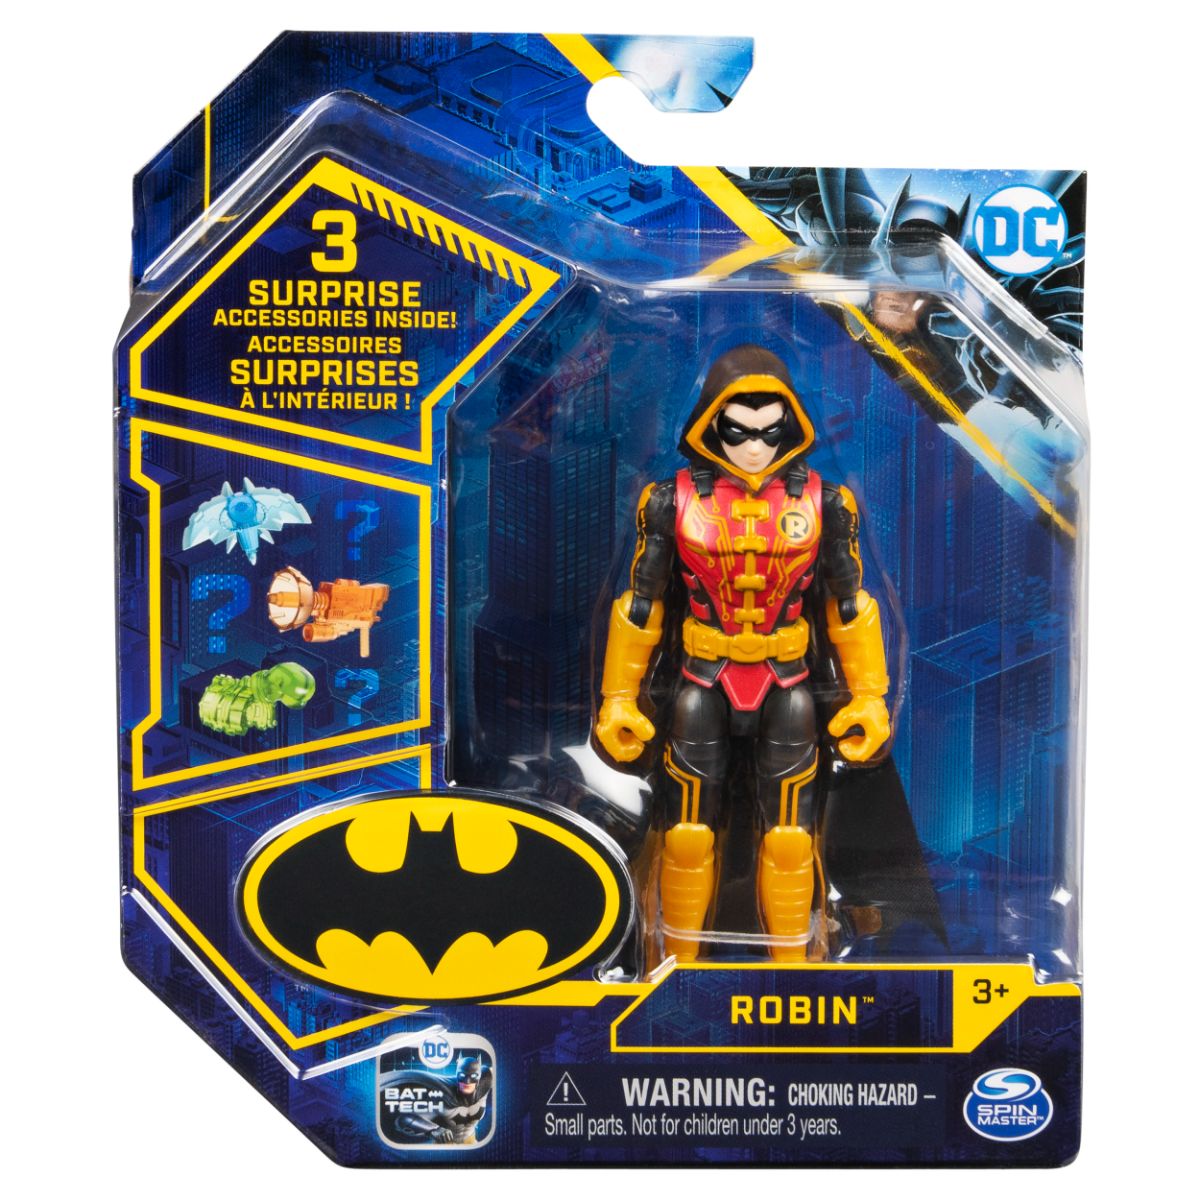 Set Figurina cu accesorii surpriza Batman, Robin 20131338 20131338